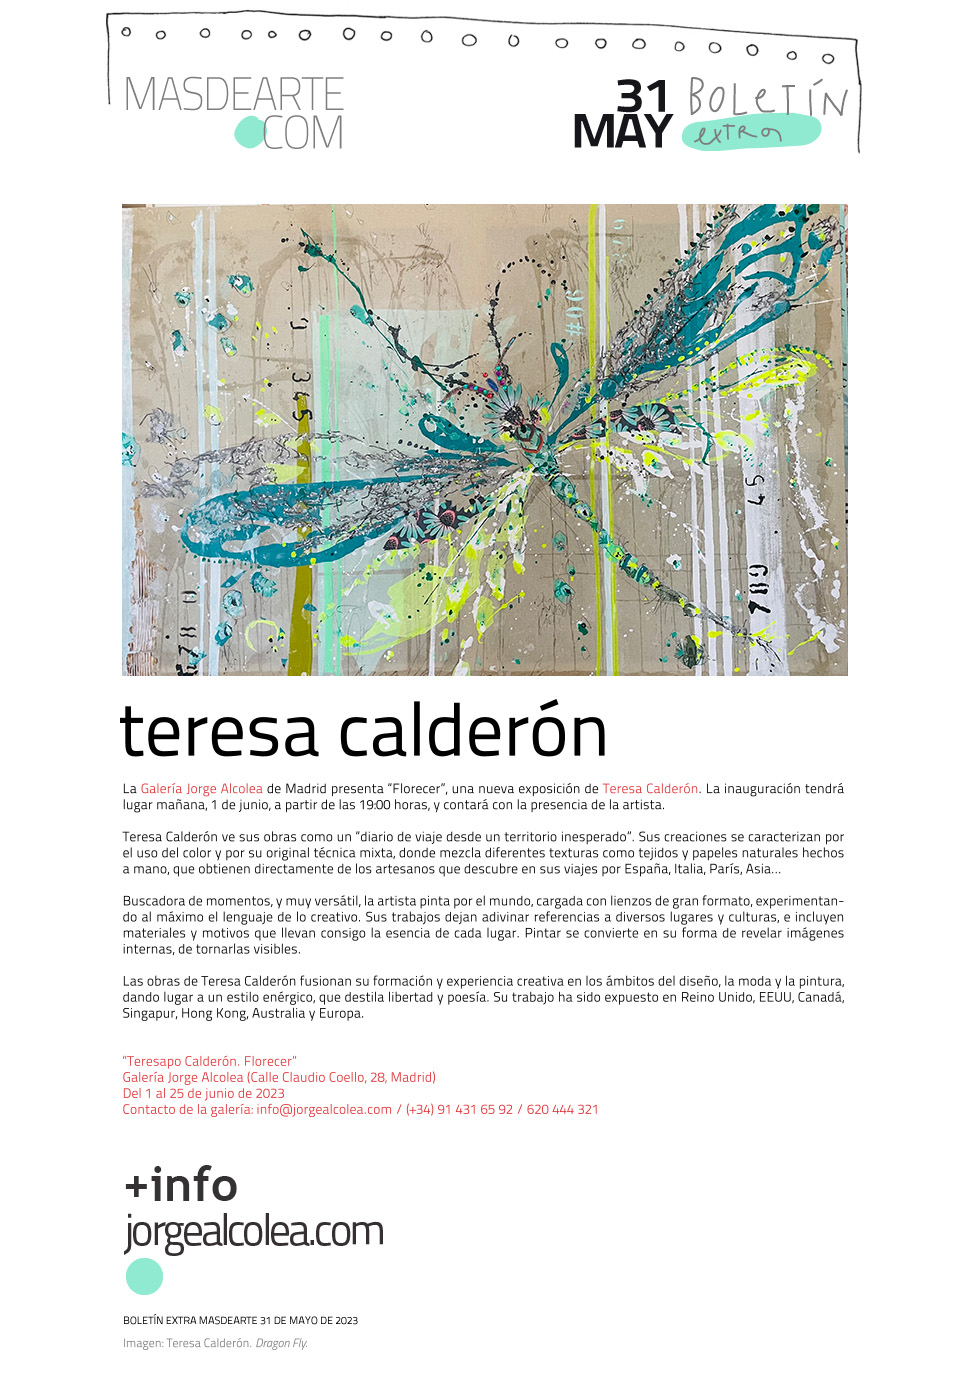 Extra masdearte: inauguración de Teresa Calderón en la galería
 Jorge Alcolea. Jueves 1 de junio a las 19:00 horas.